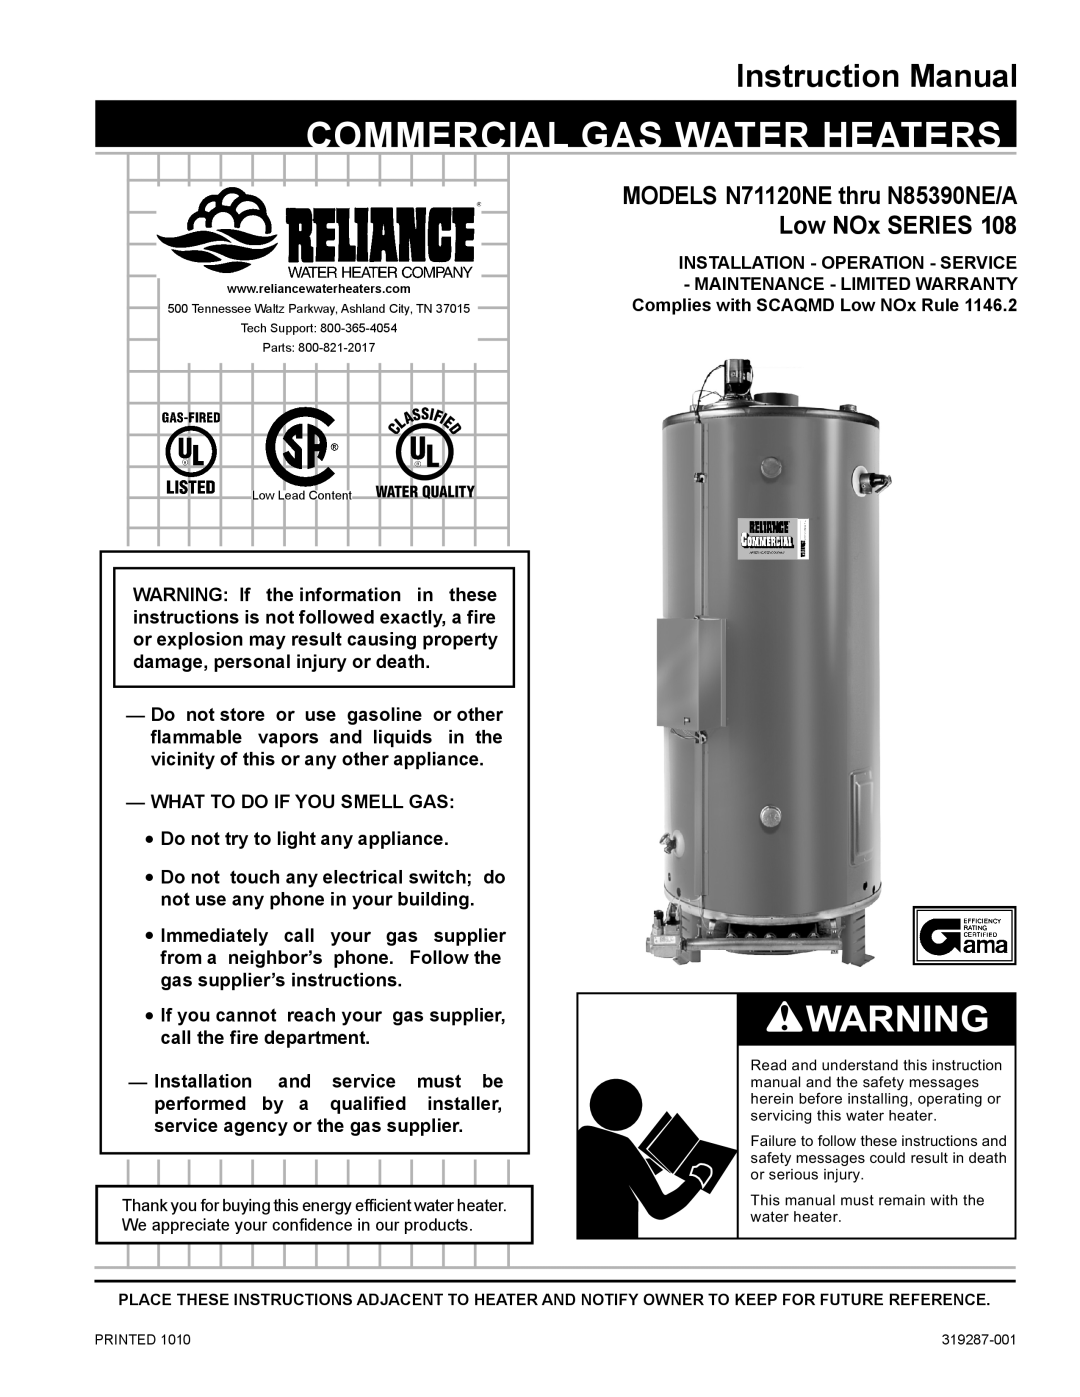 Reliance Water Heaters N71120NE, N85390NE instruction manual Instruction Manual, commercial gas water heaters 